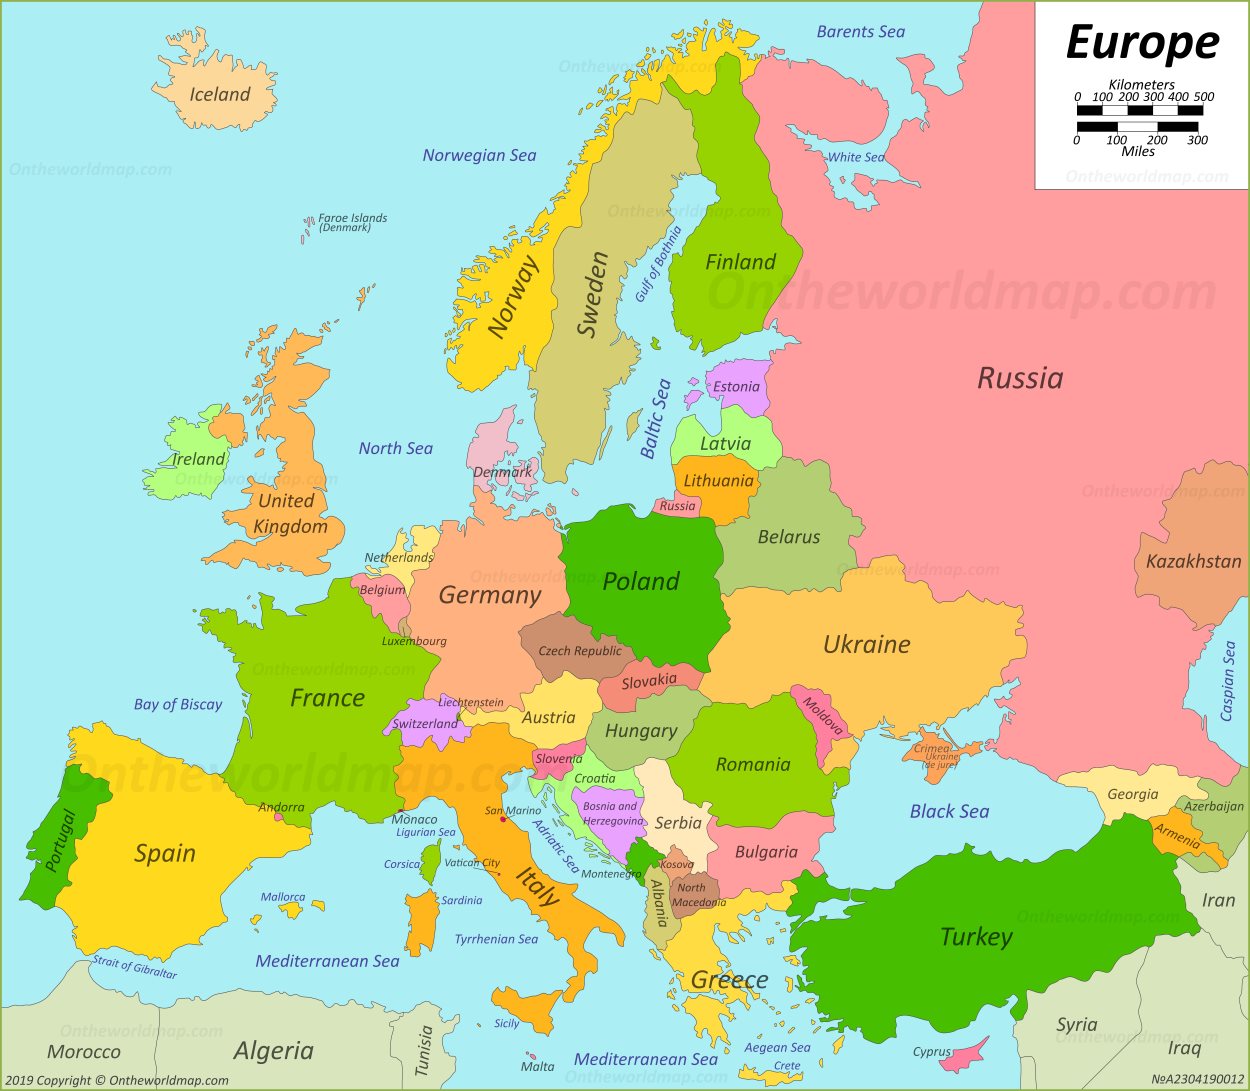 Europe Atlas Map 